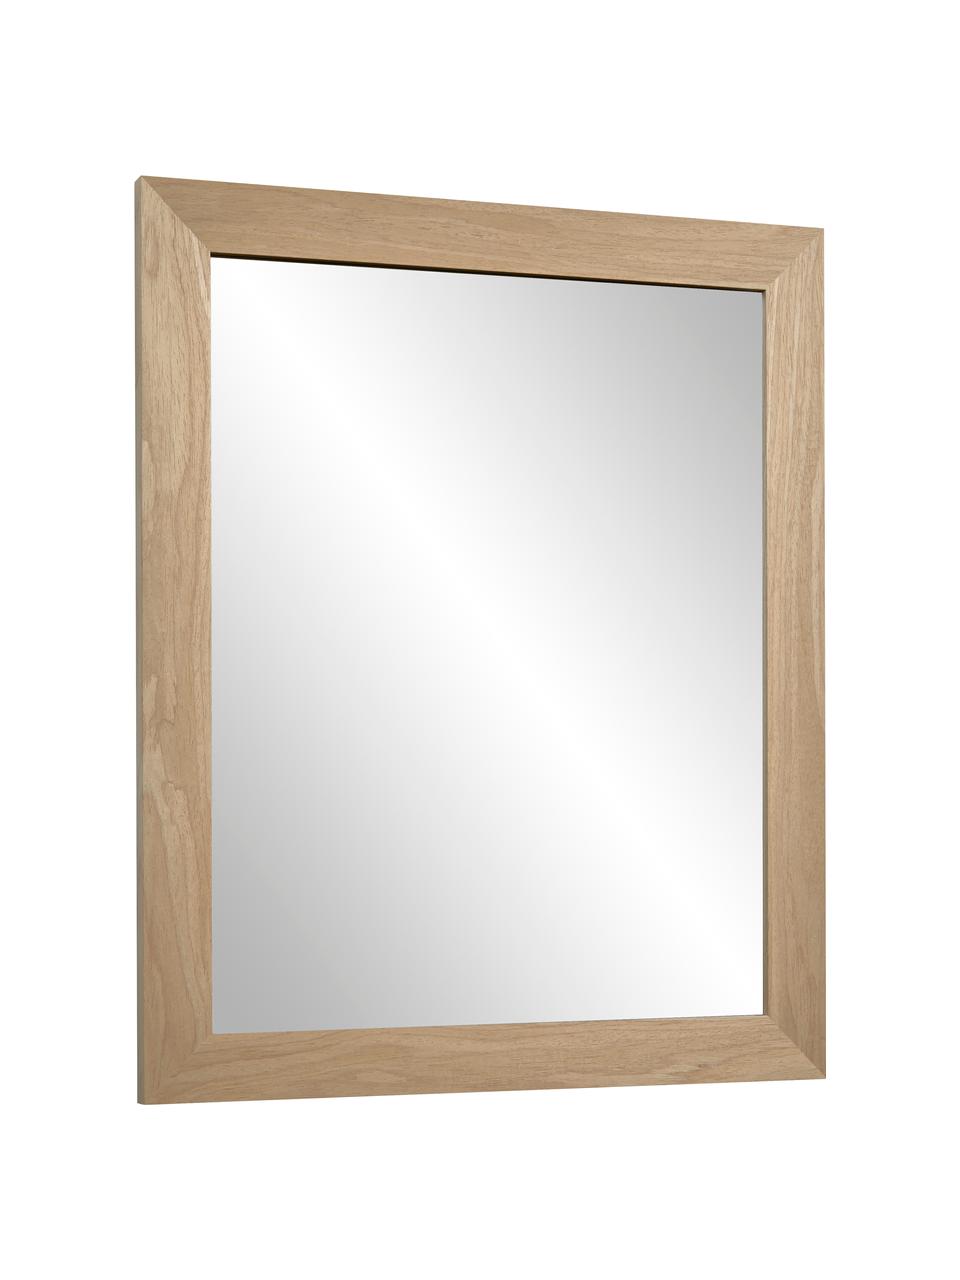 Specchio da parete con cornice in legno Wilany, Cornice: legno, Superficie dello specchio: lastra di vetro, Beige, Larg. 47 x Alt. 58 cm